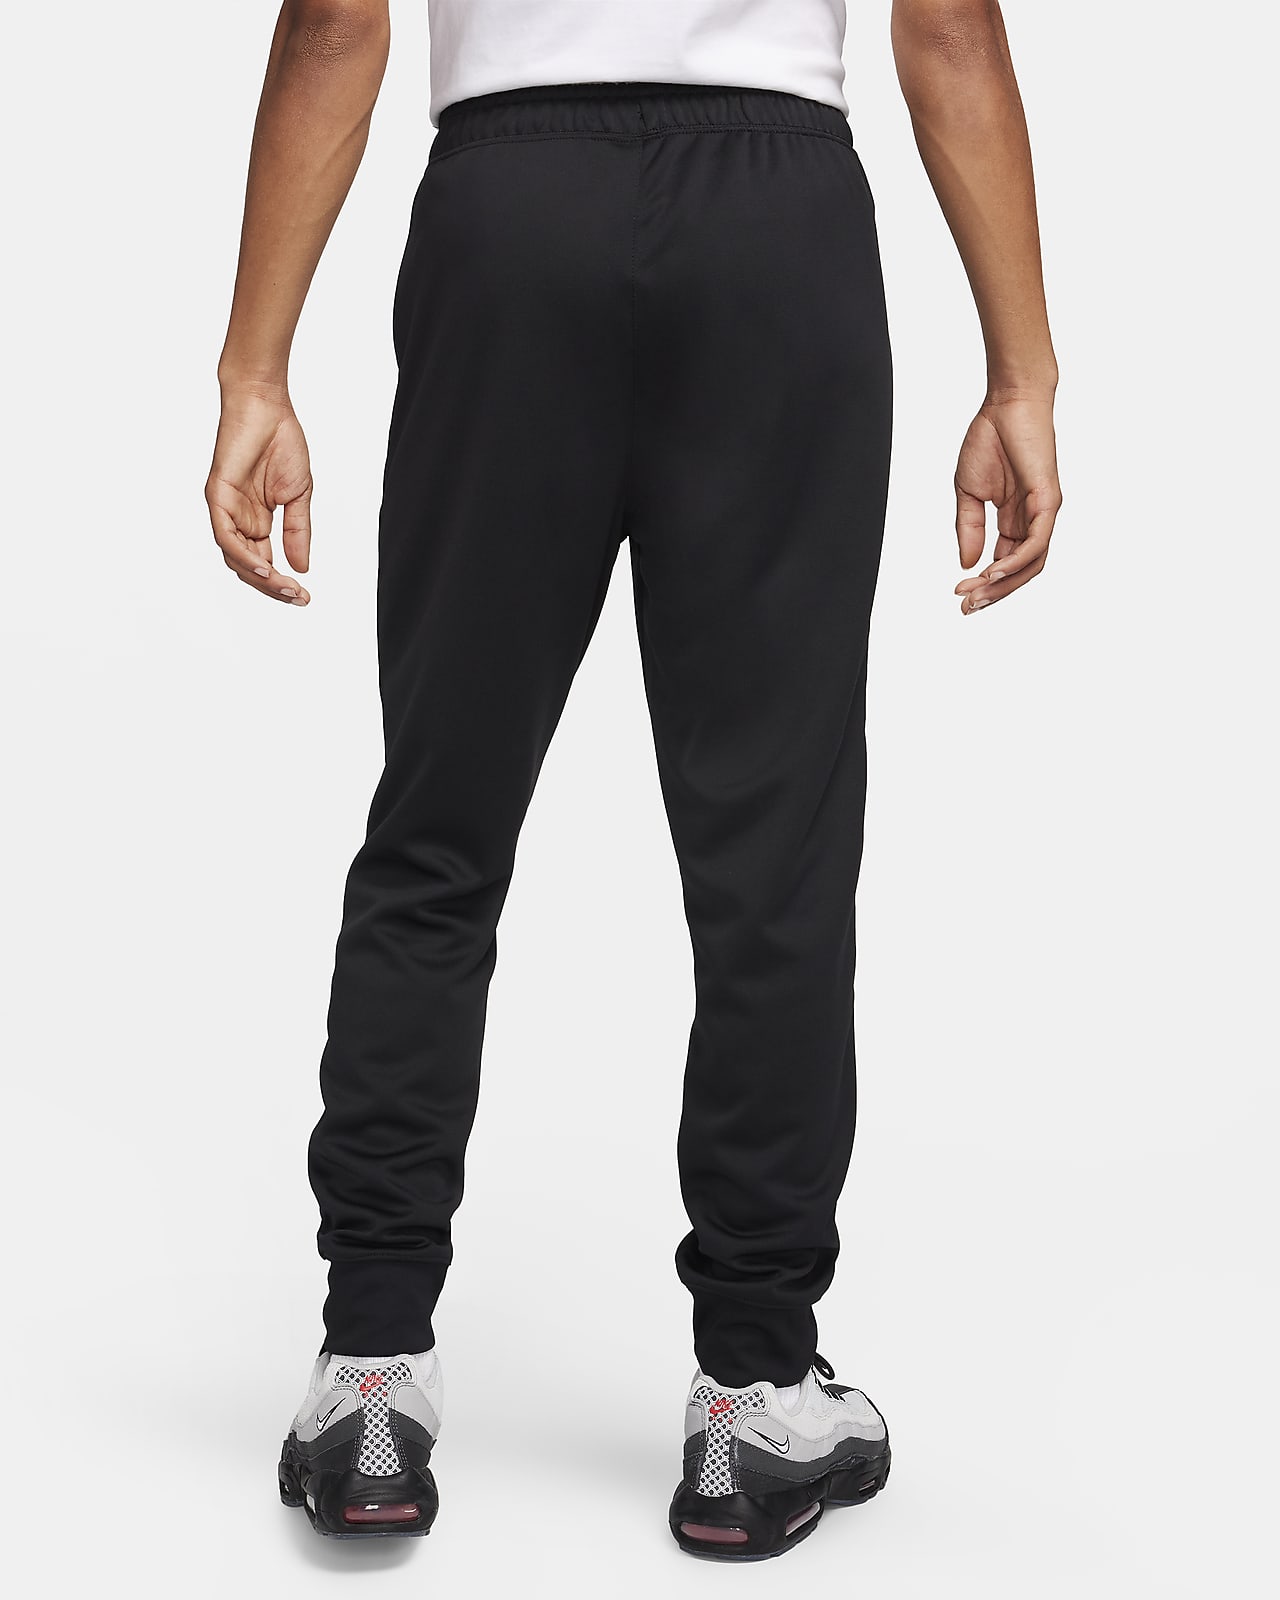 Pantalons de survêtement homme - Nike, Remise jusqu'à 45 %